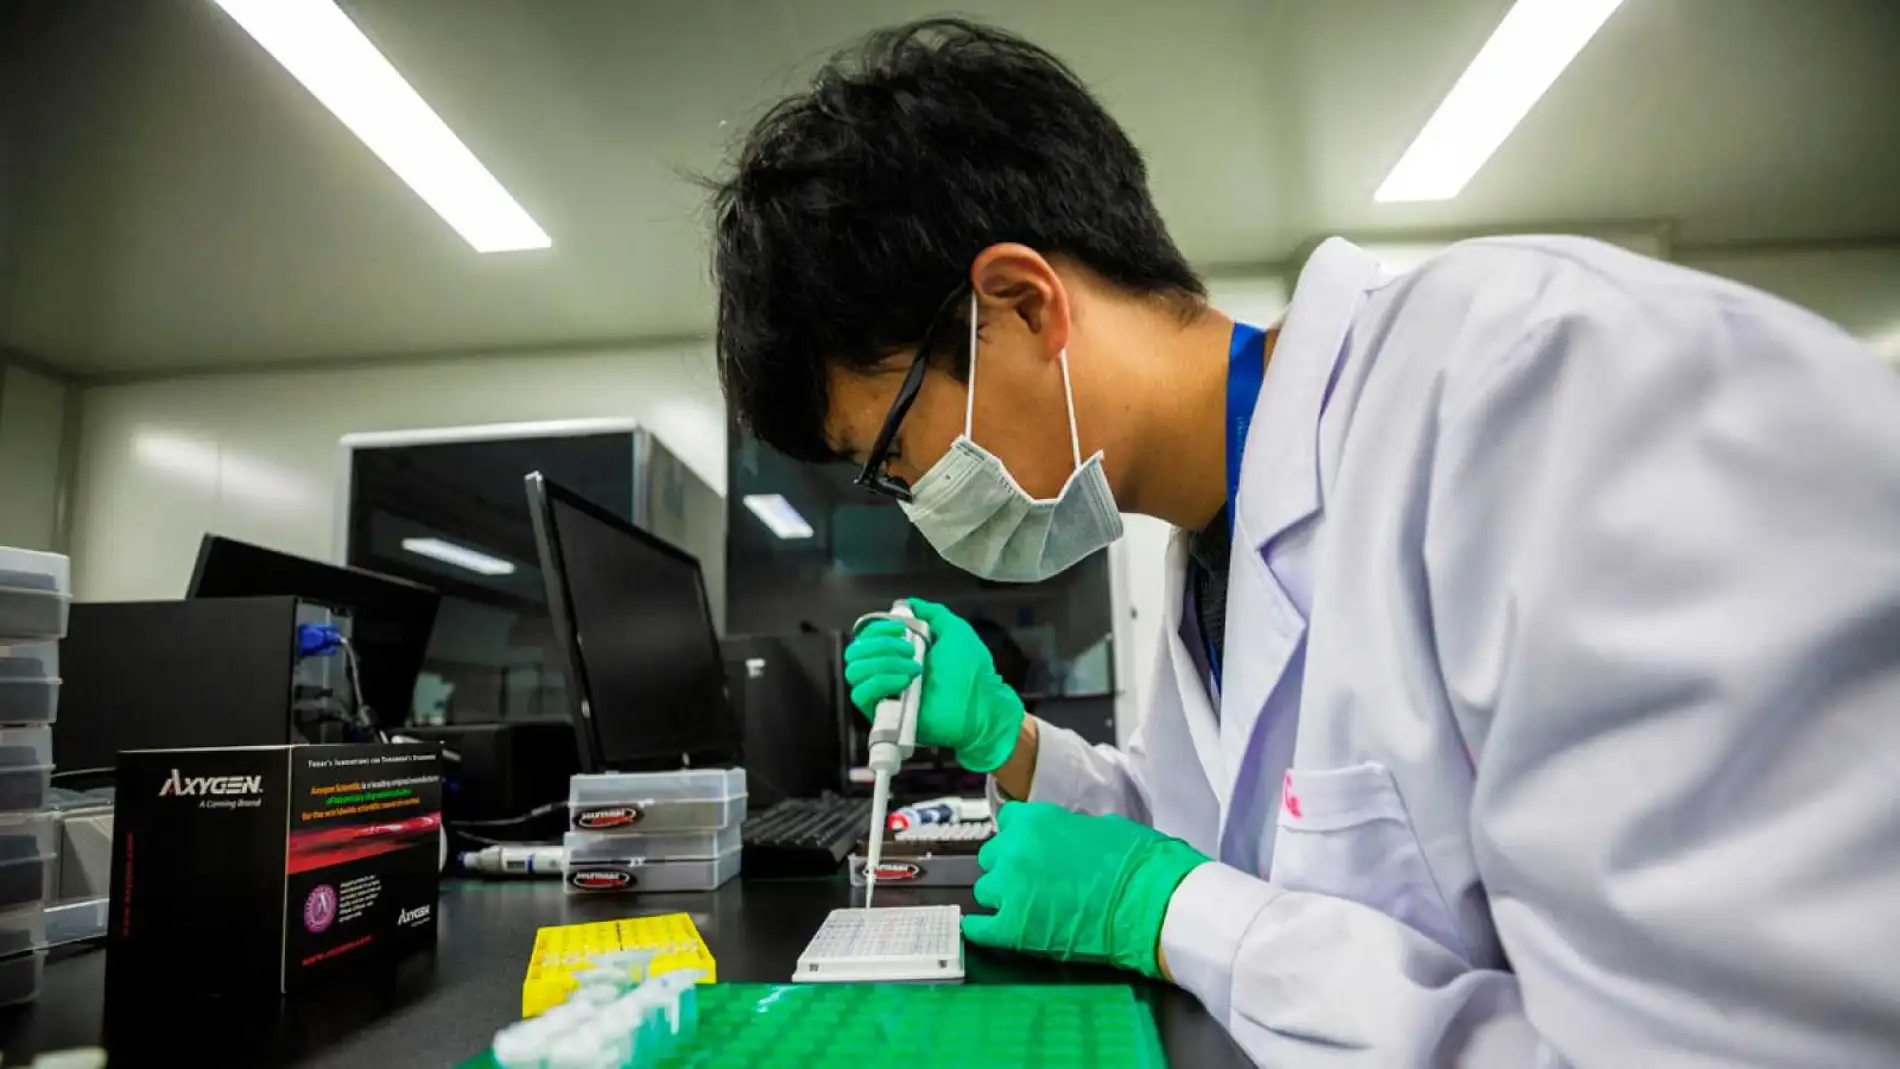 La teoría del estudio asegura que el virus fue creado artificialmente por científicos chinos